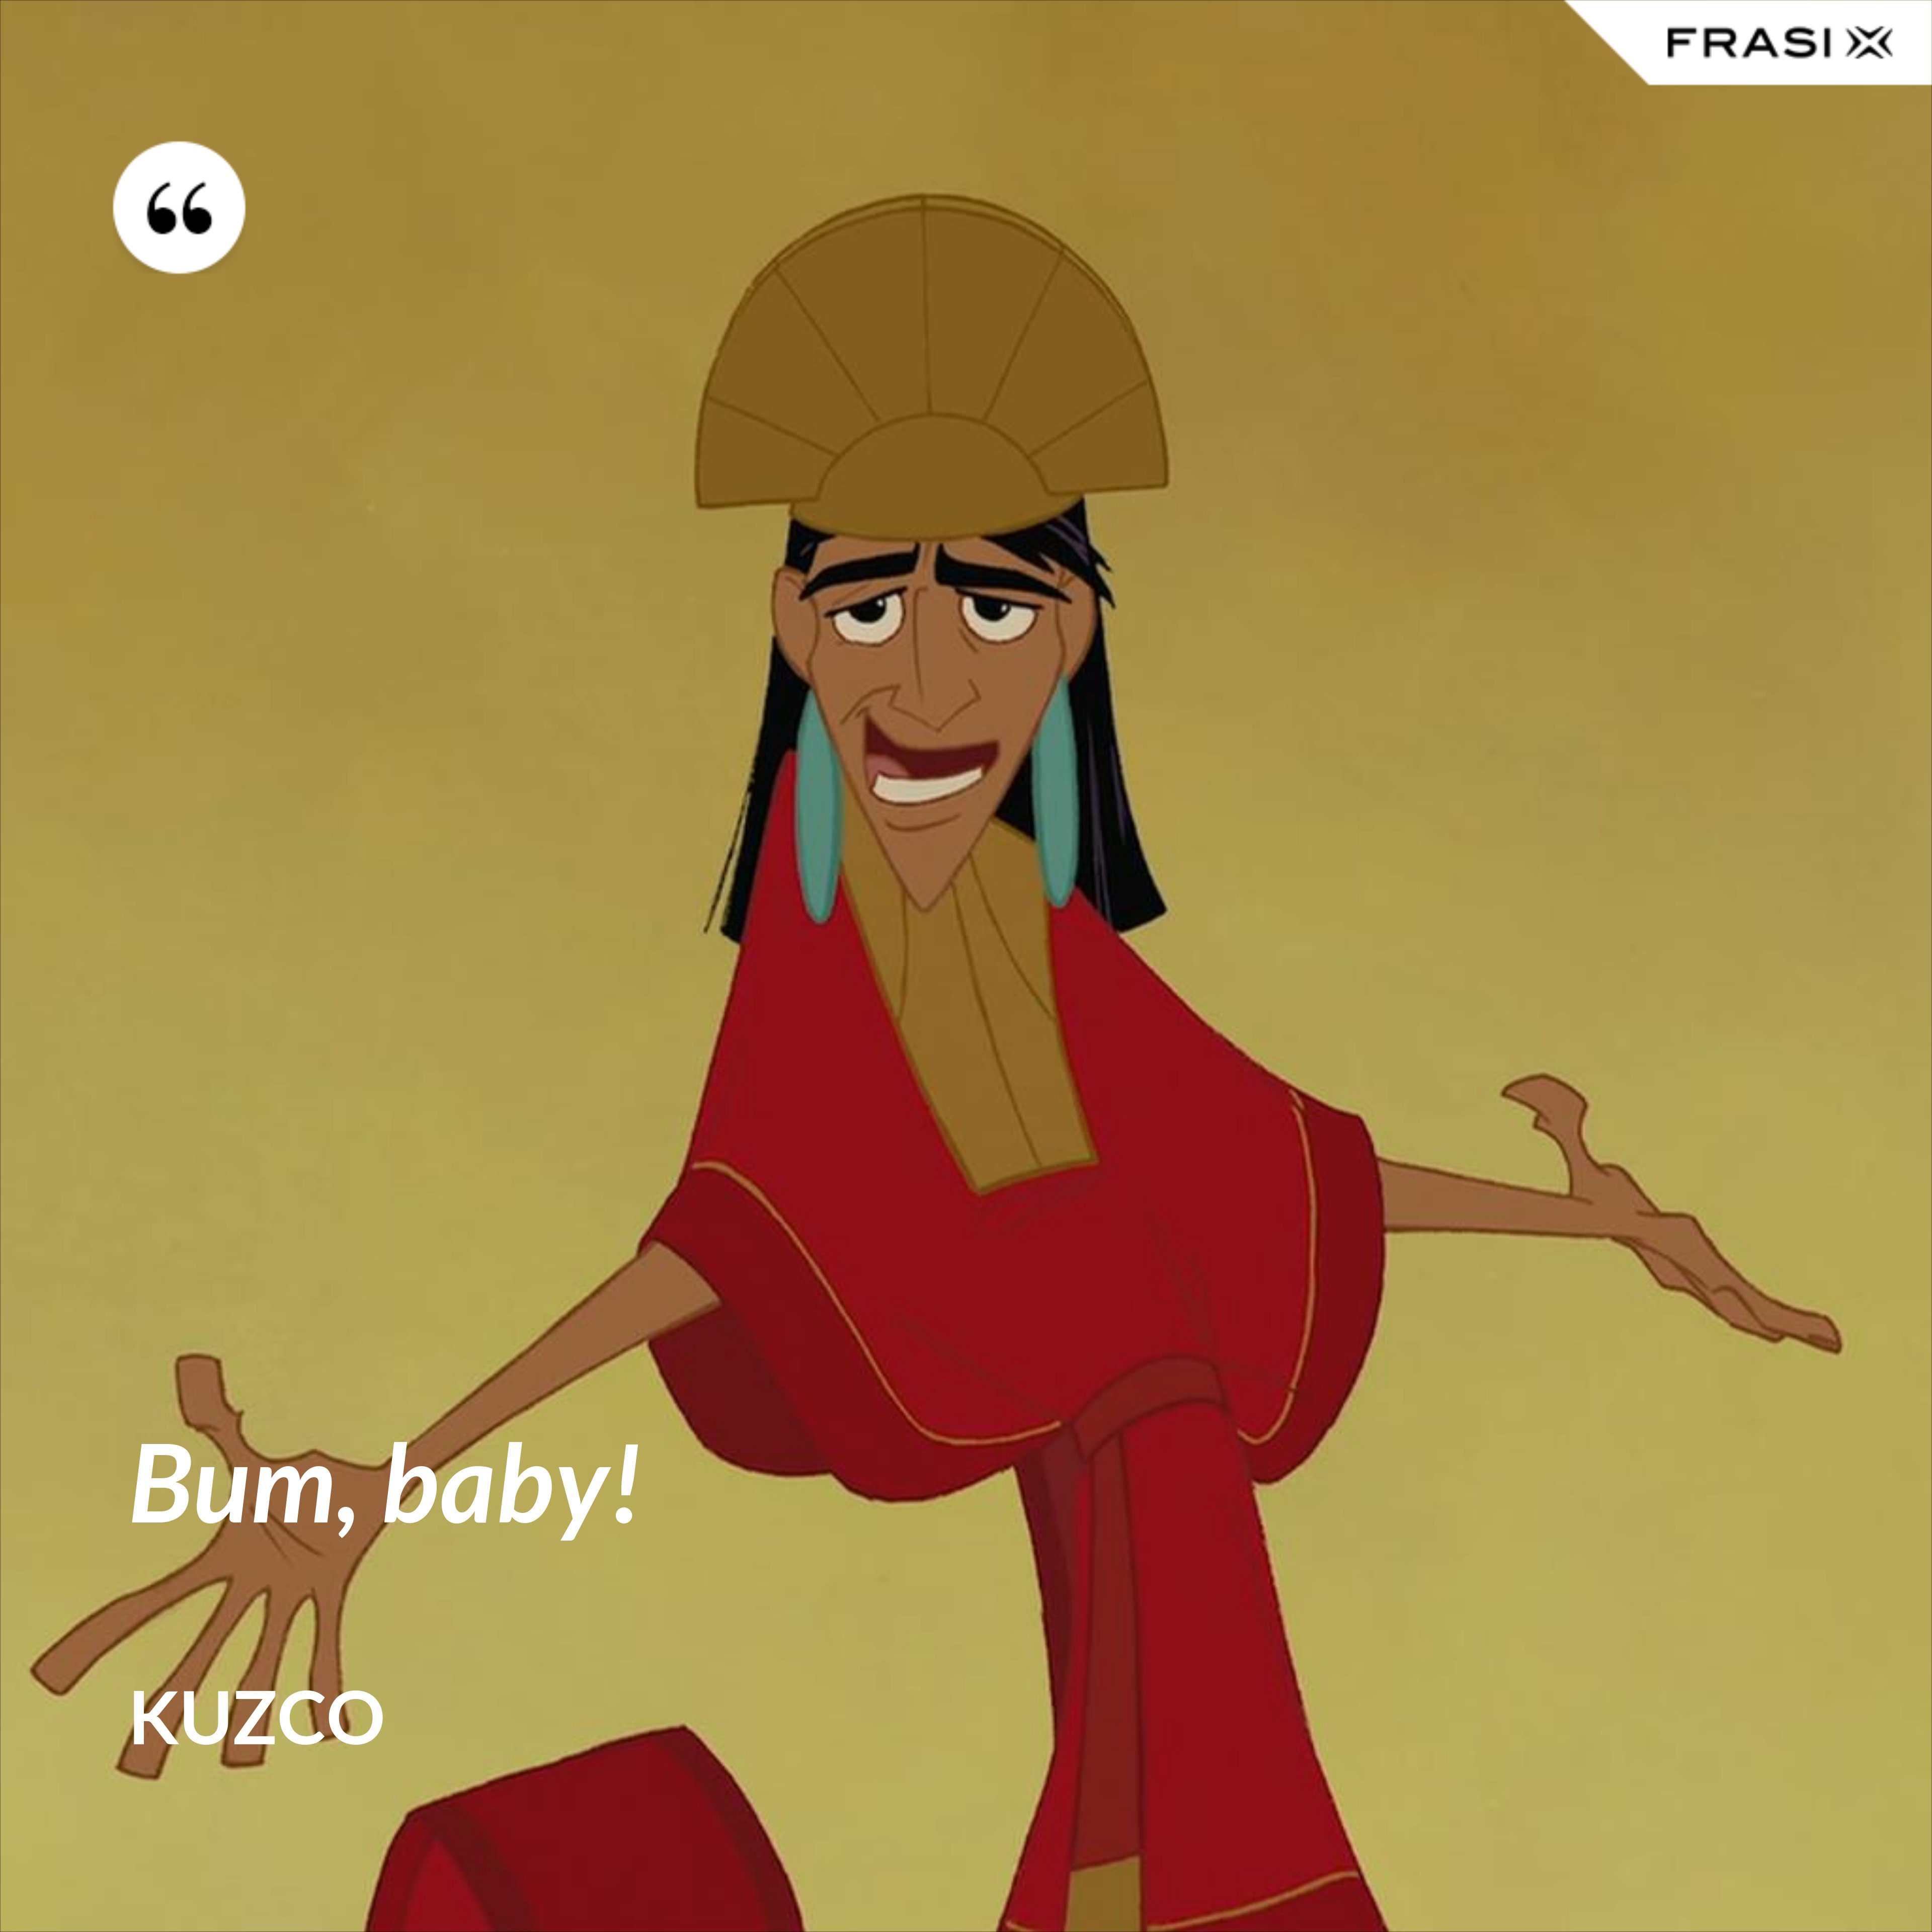 Bum, baby! - Kuzco